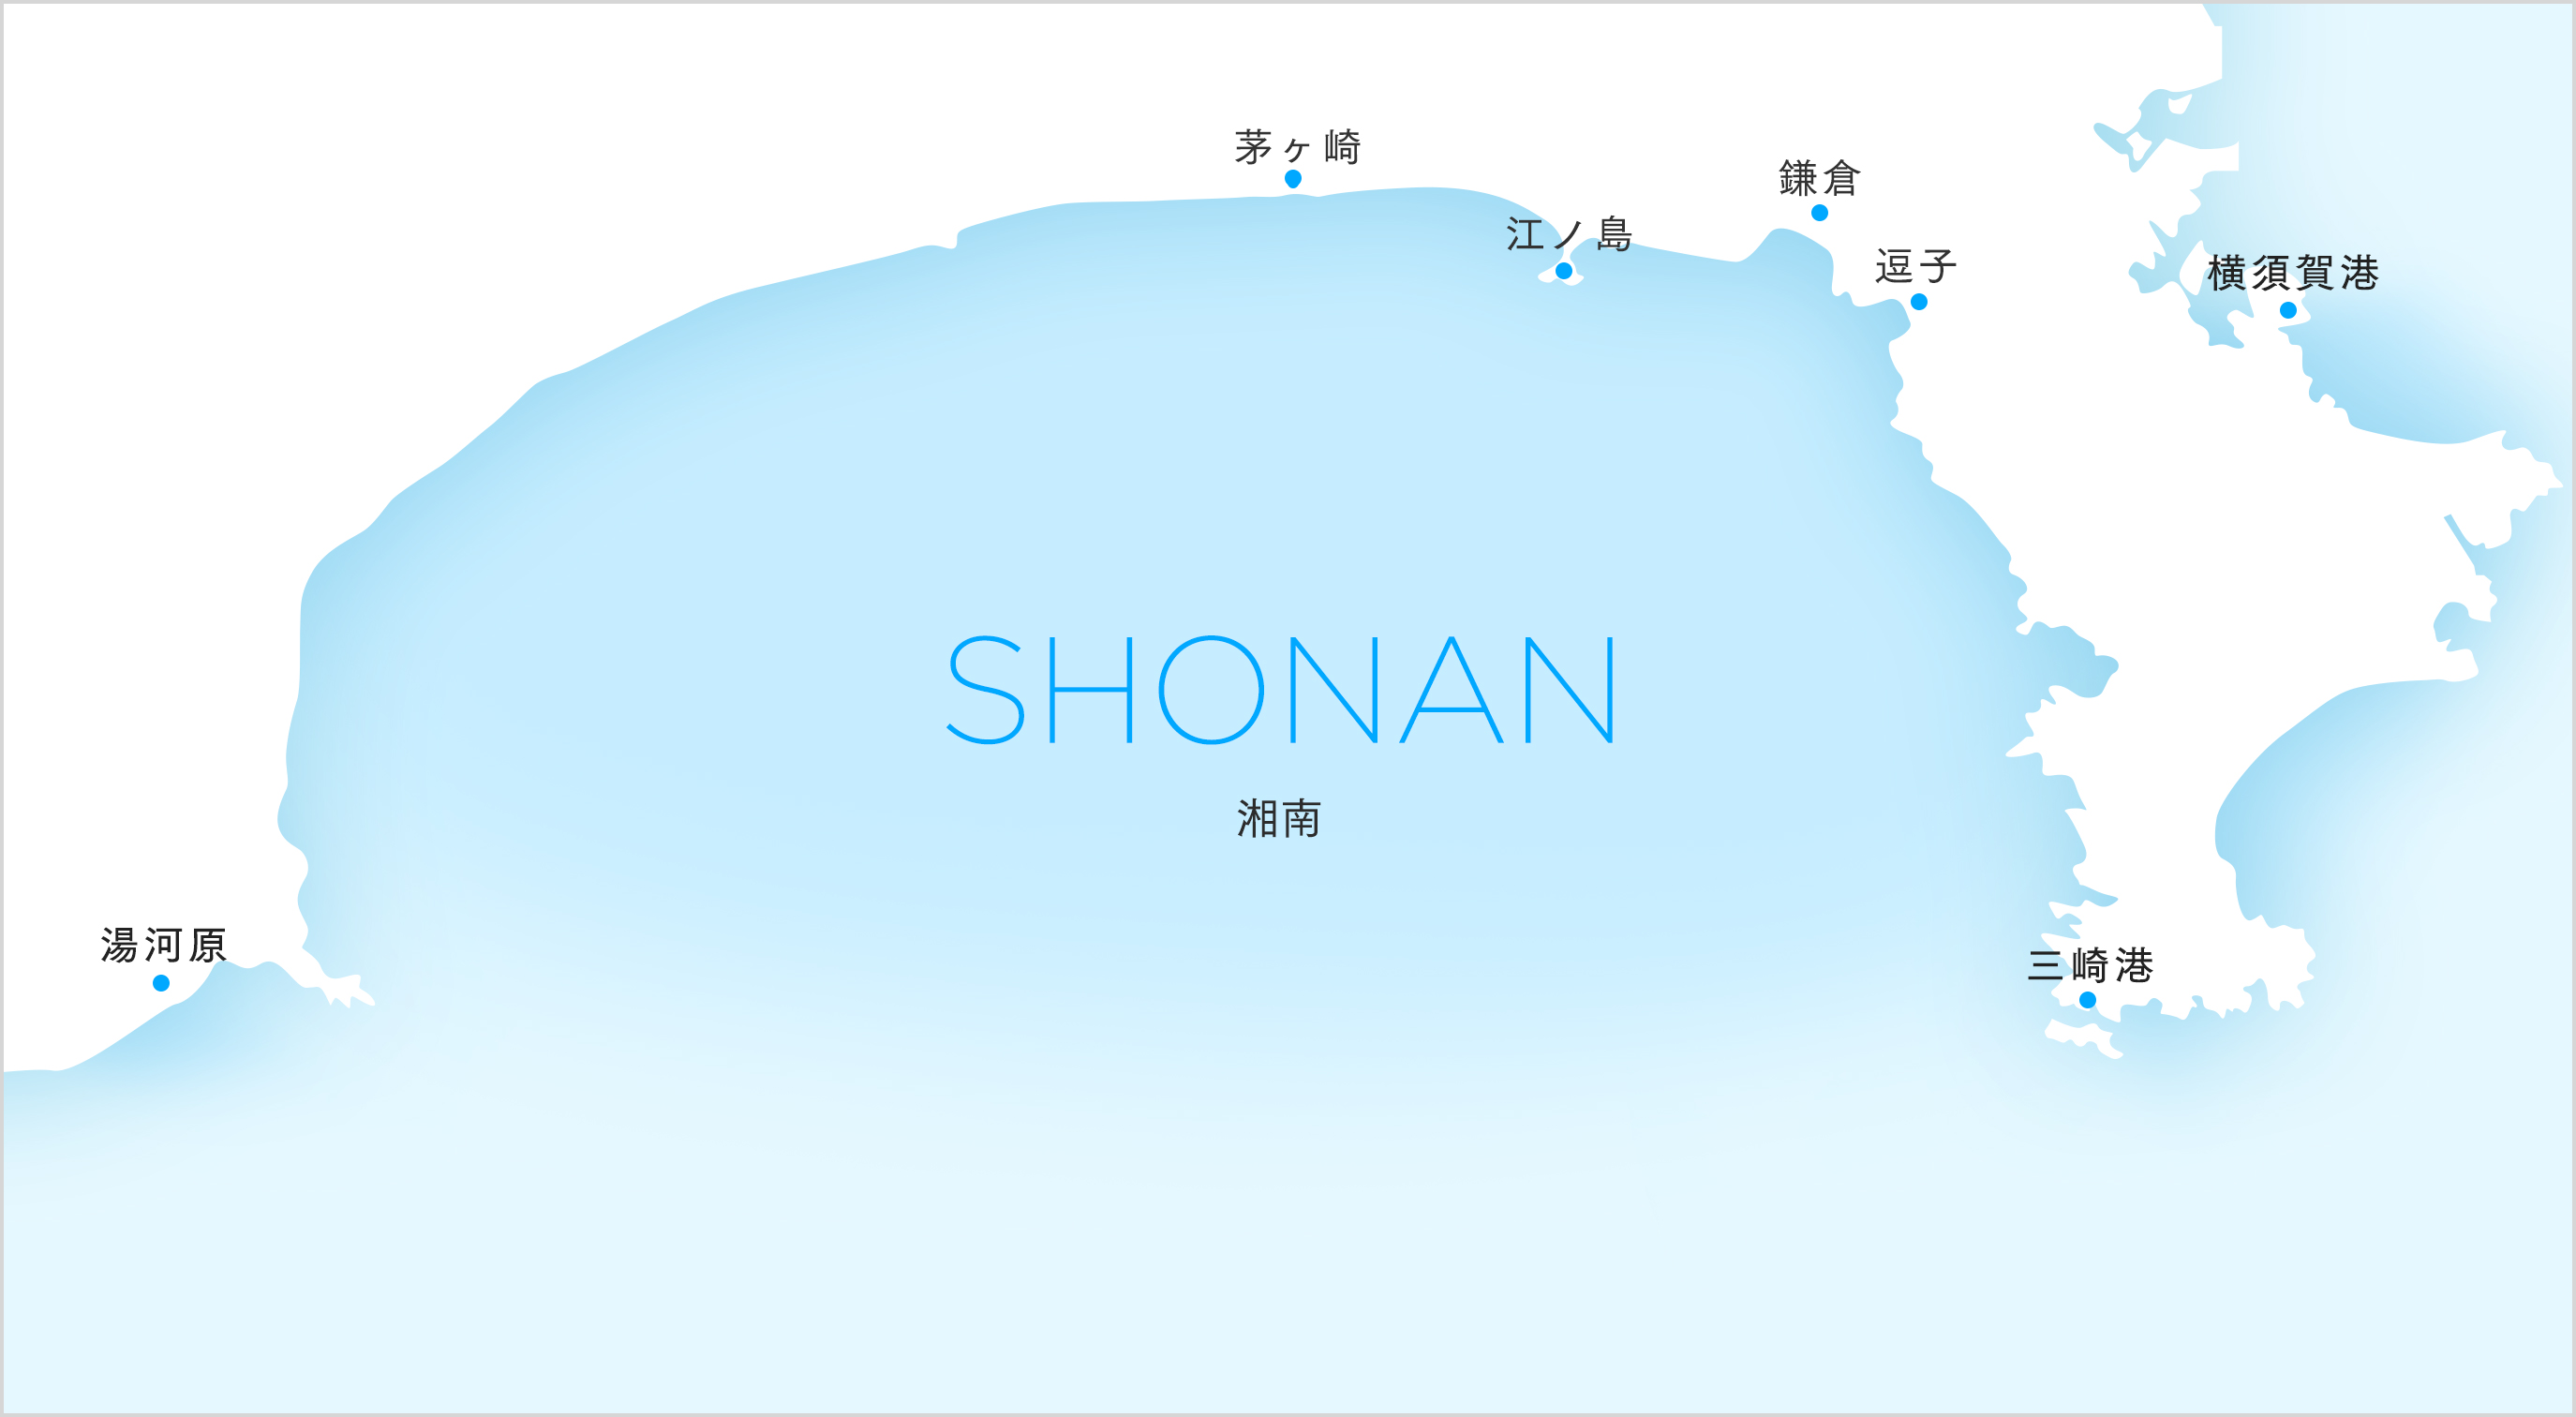 マジか！！！神奈川県、県の沿岸地域全てを「SHONAN」と命名